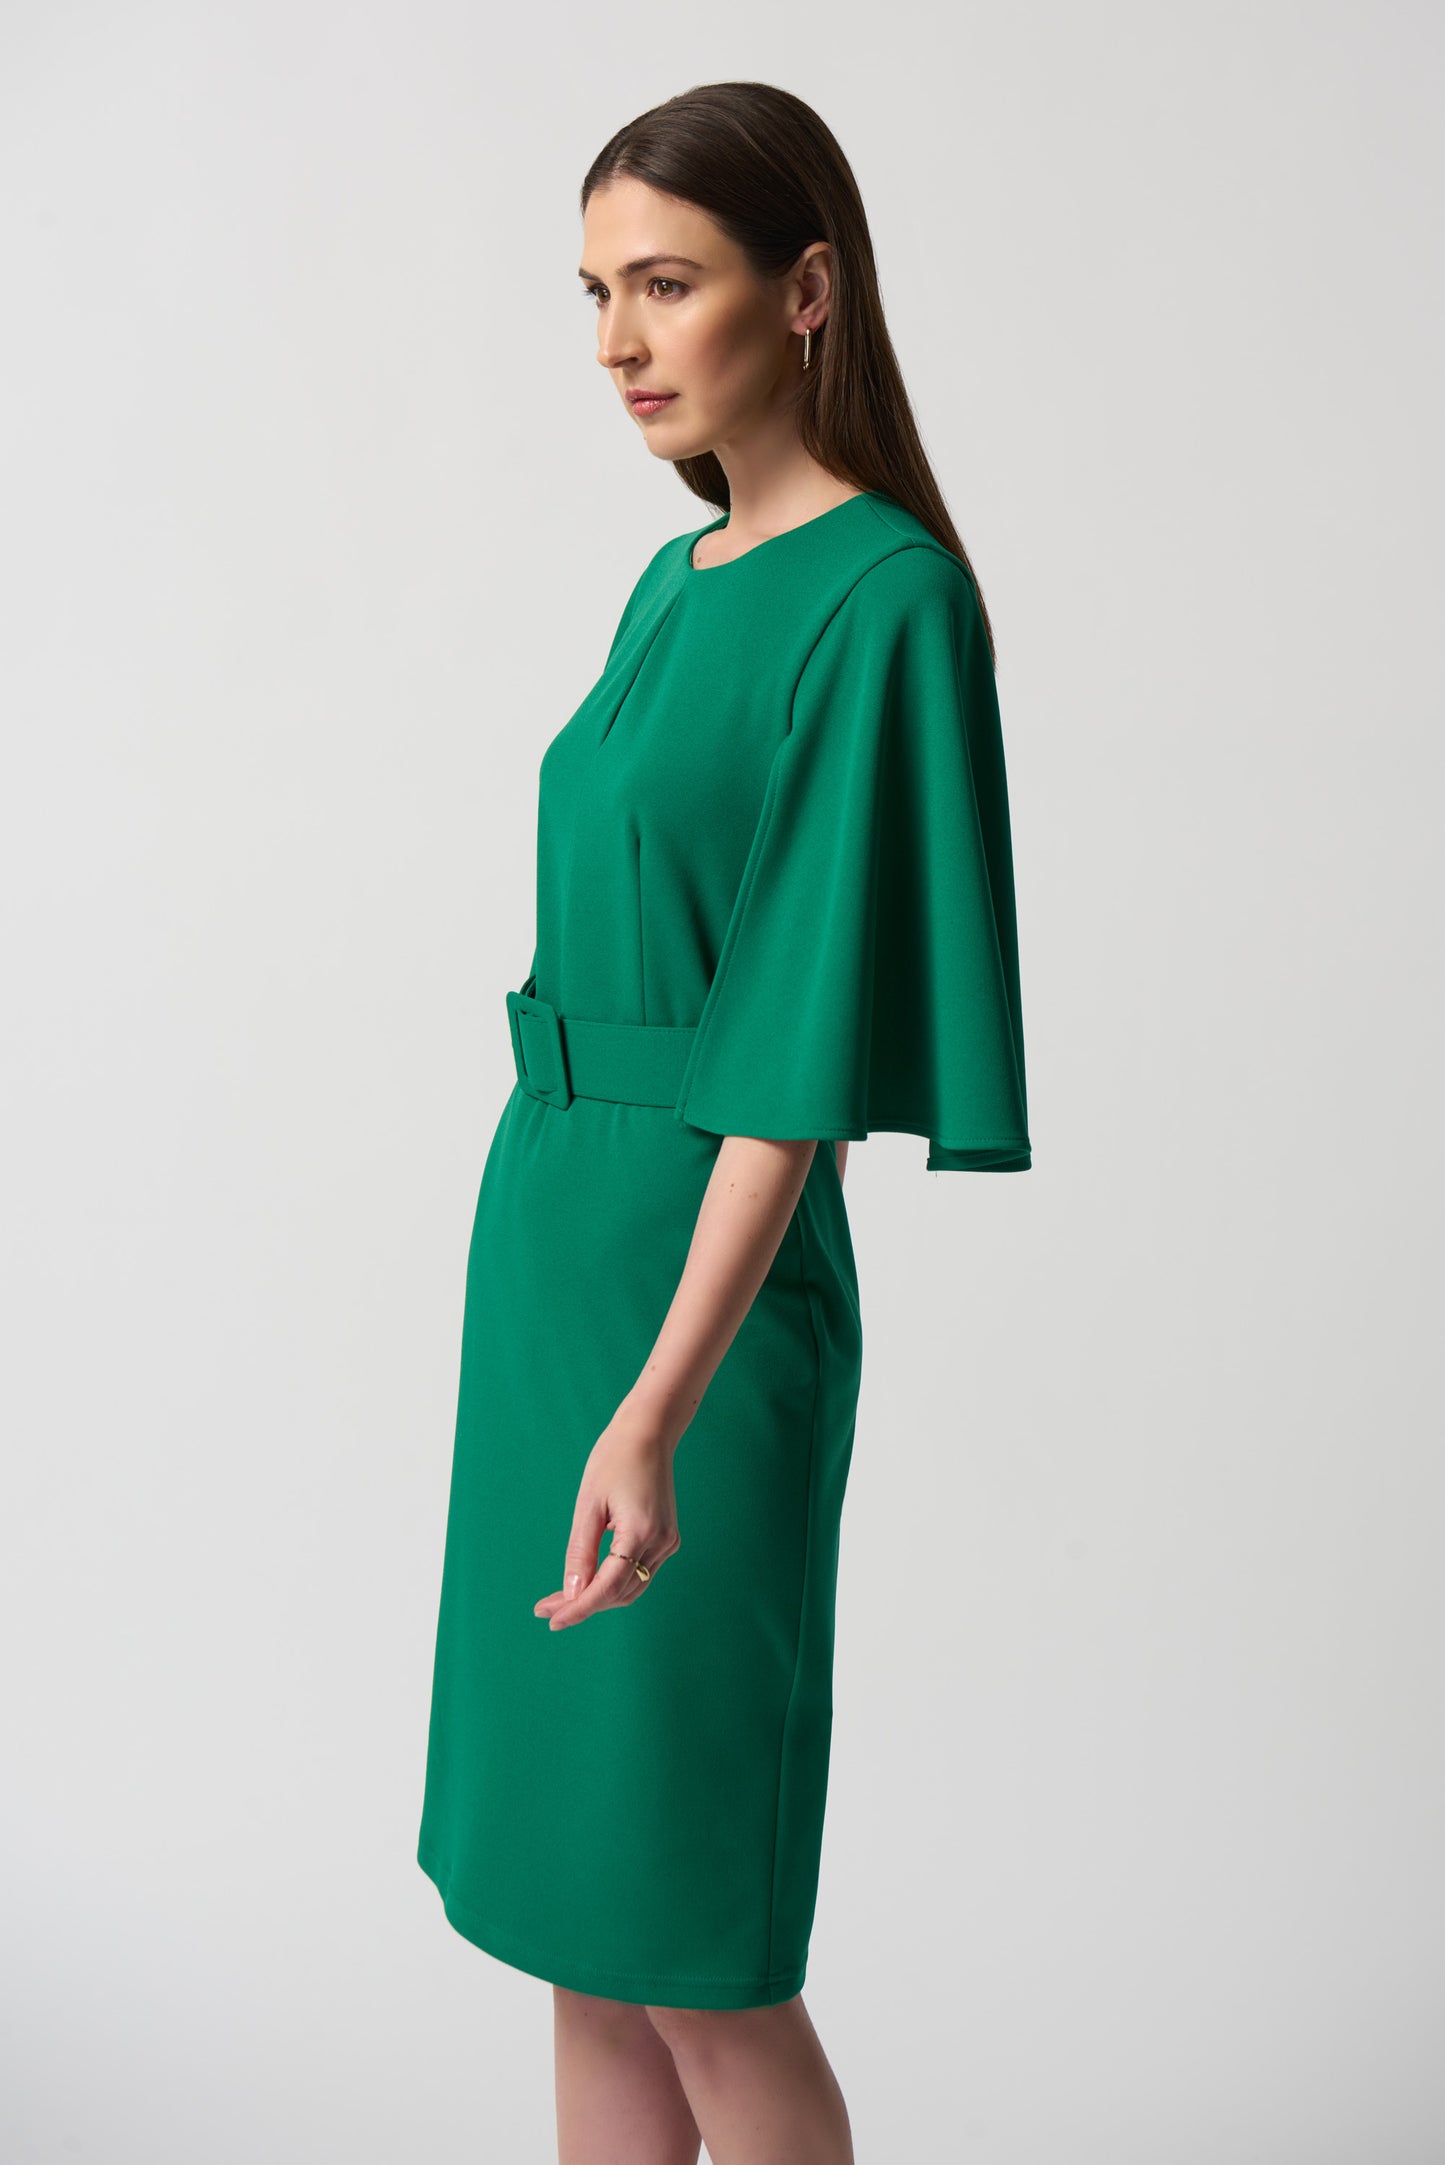 Emerald Green Dress